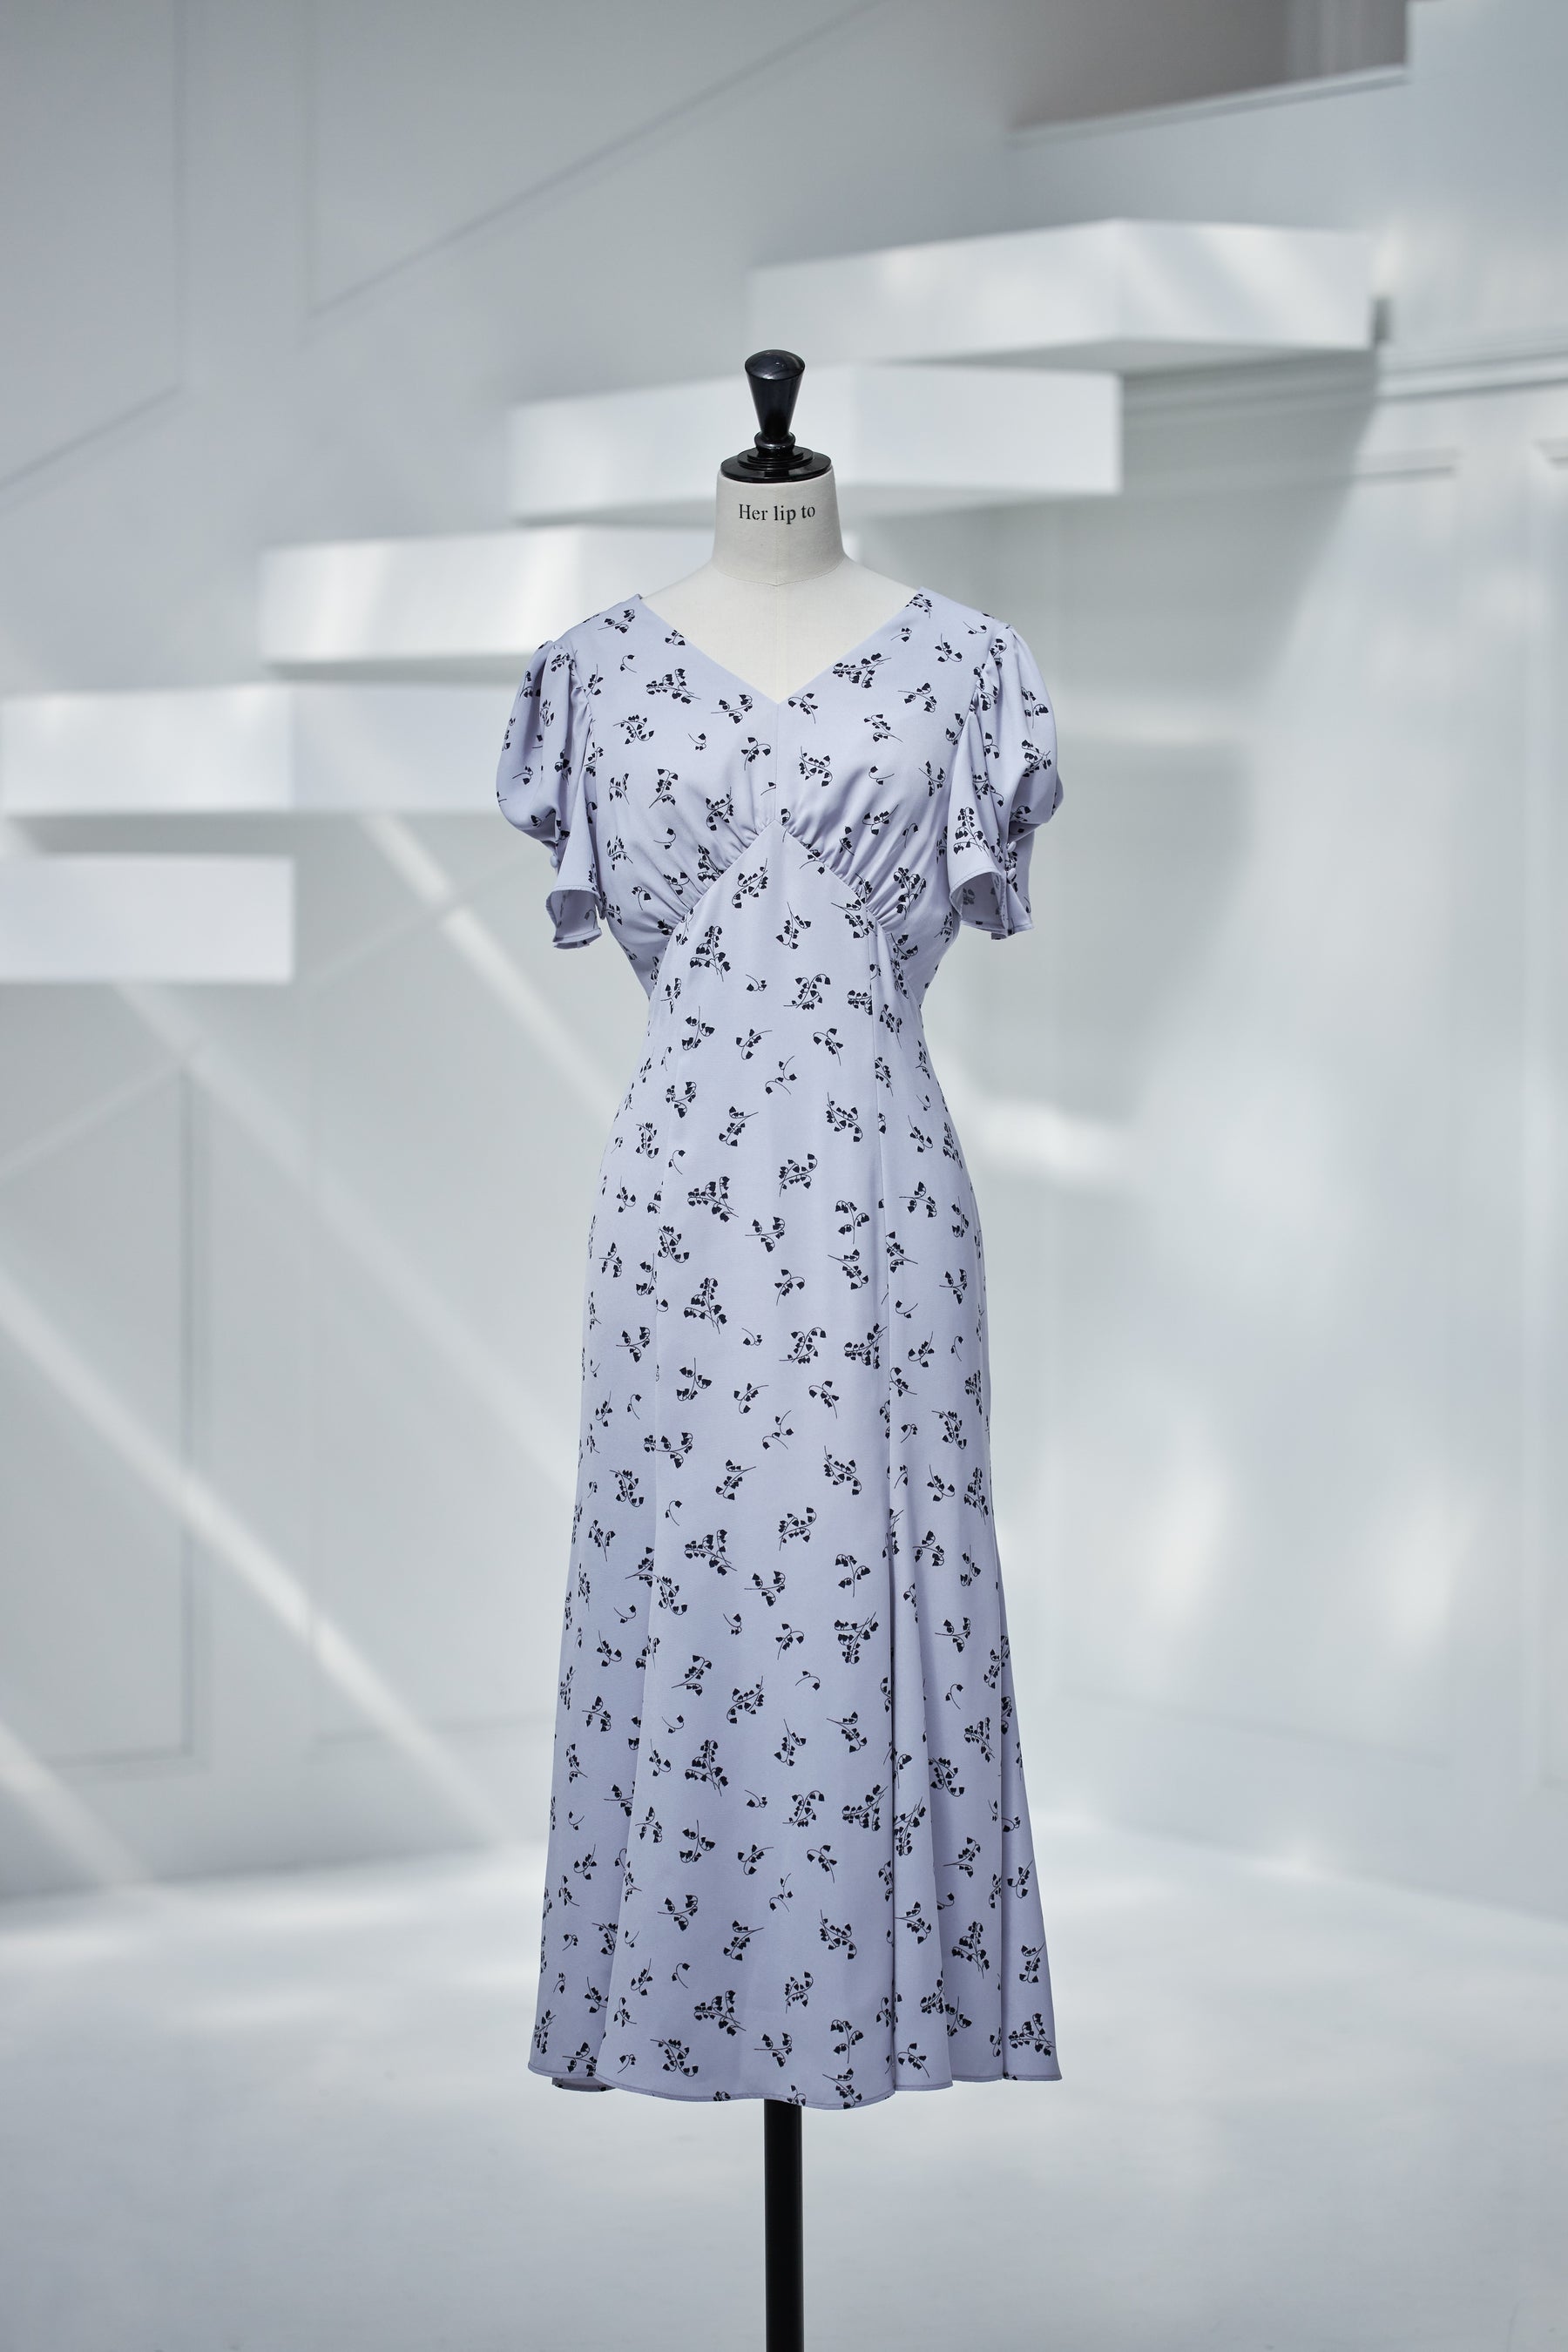 herlipto Muguet-Printed Mermaid Dress MサイズM